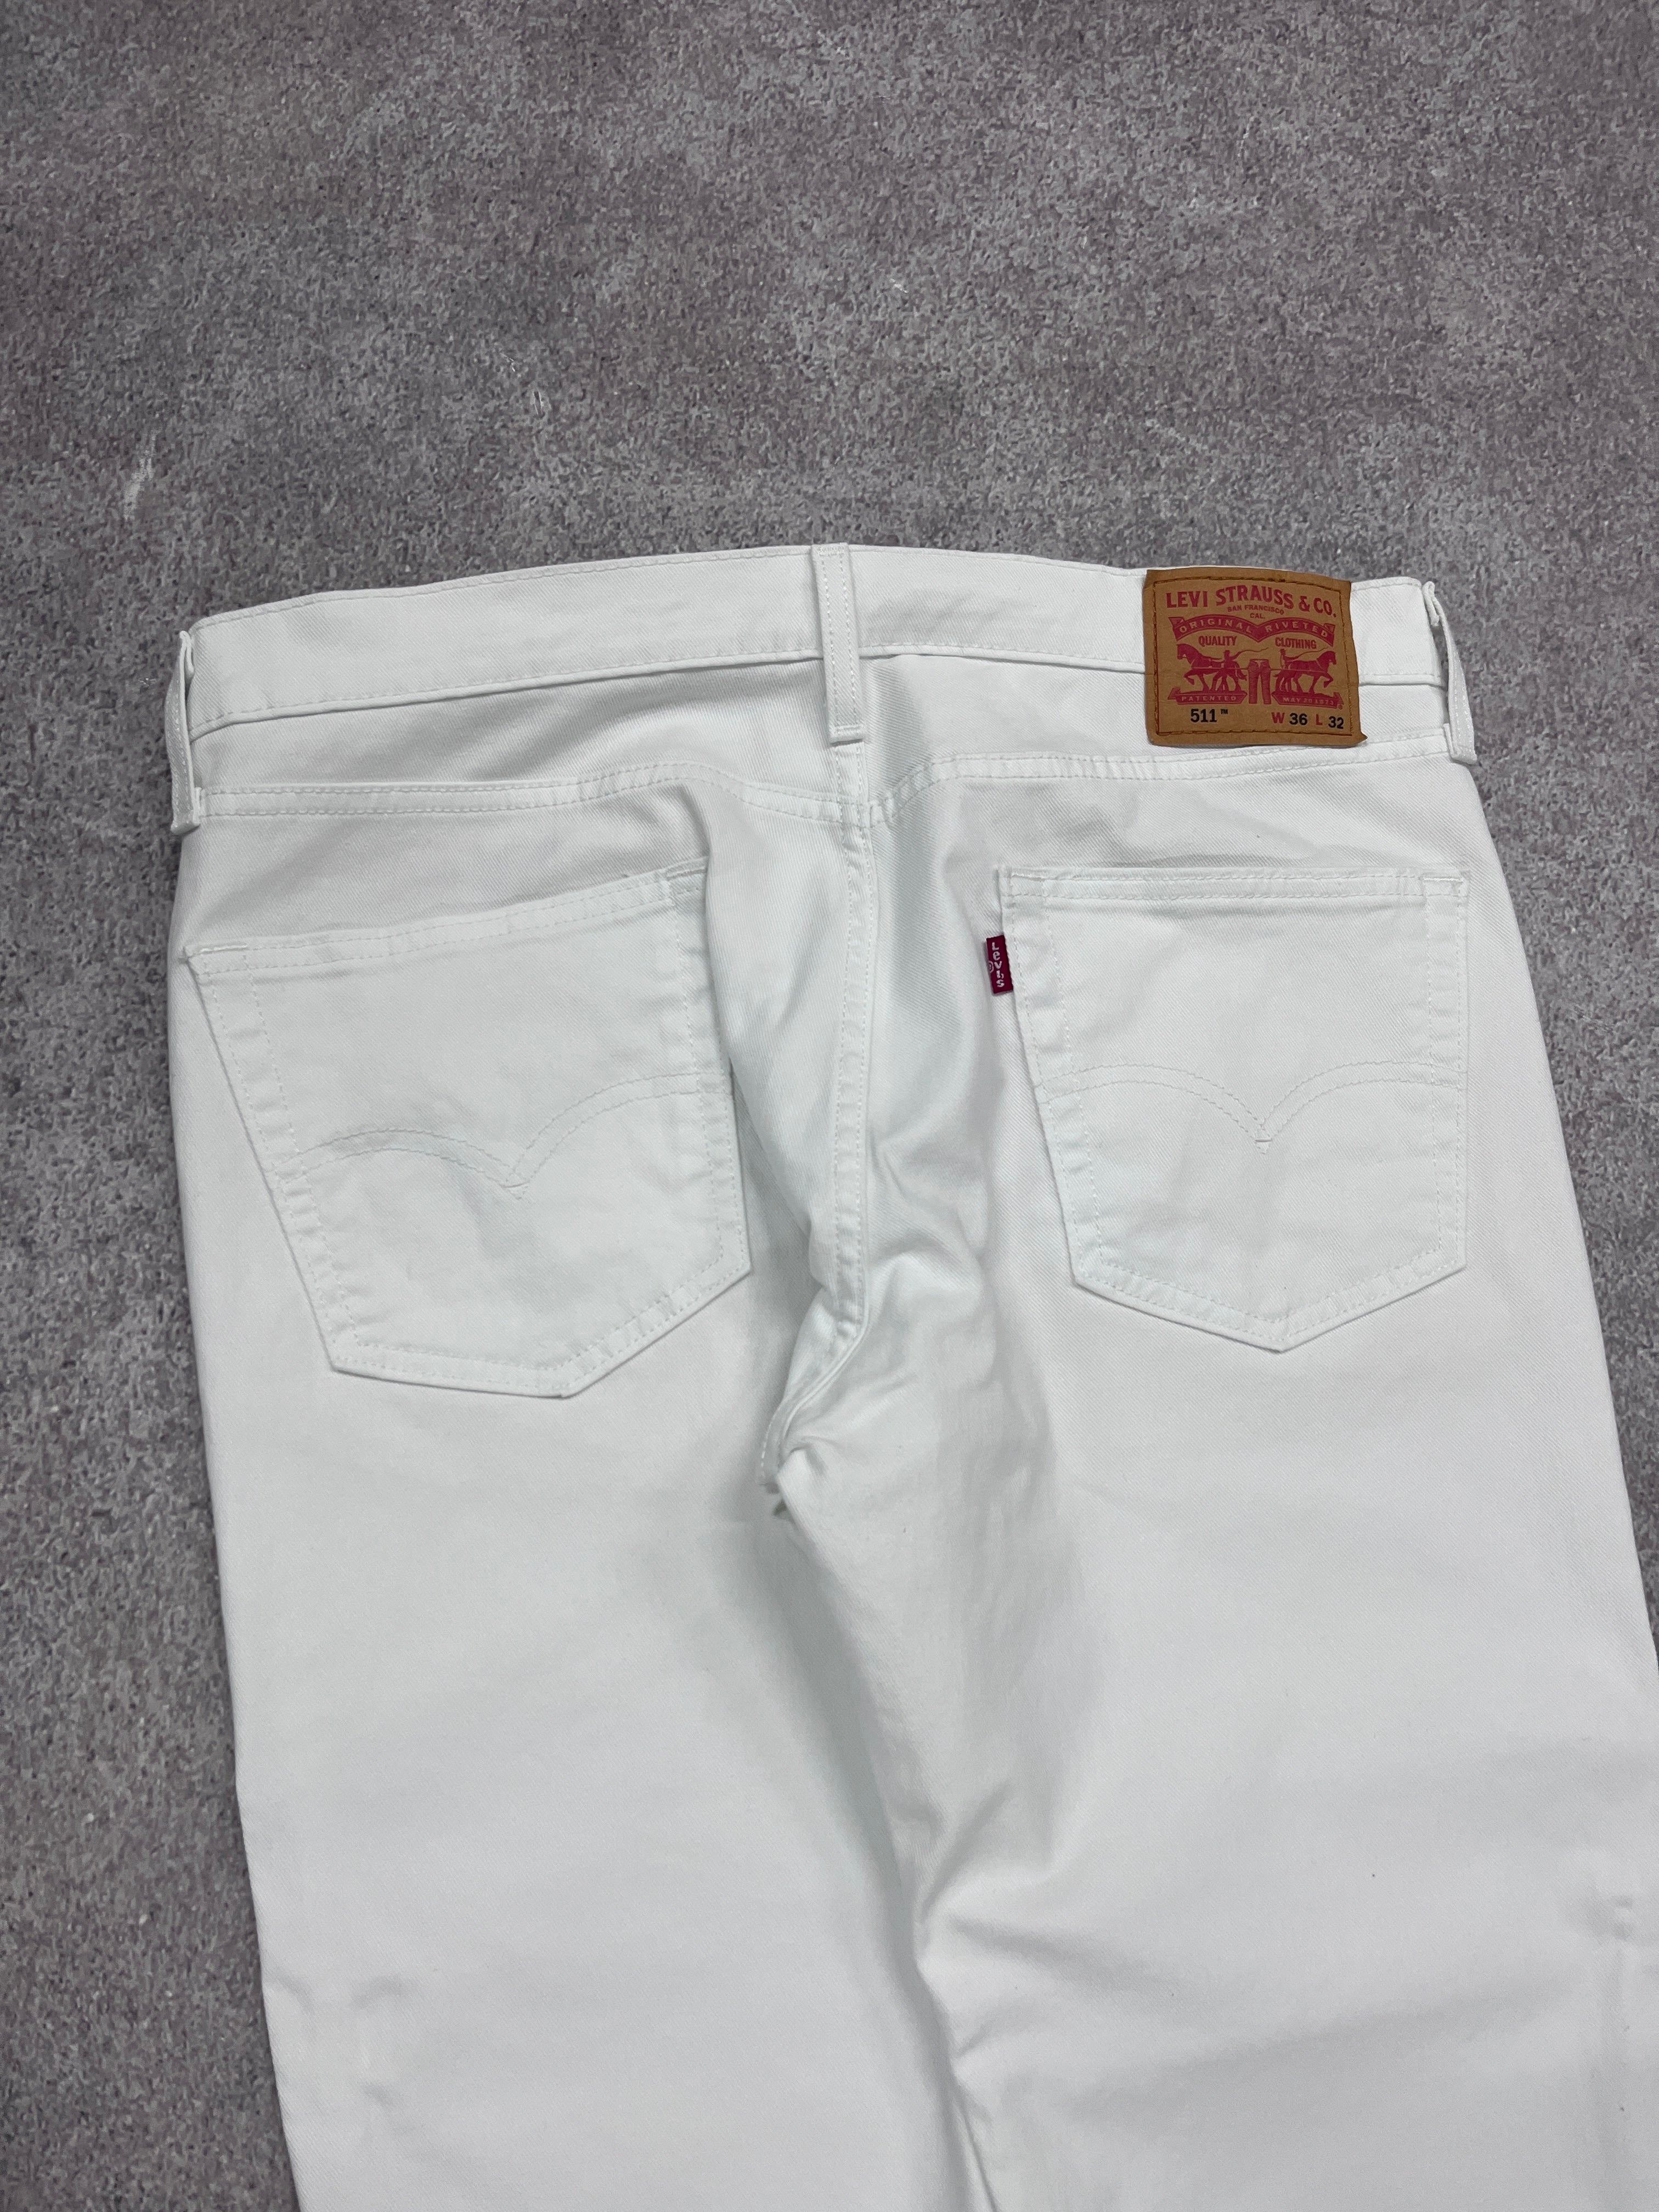 Vintage Levi 511 Denim Jeans White // W36 L32 - RHAGHOUSE VINTAGE